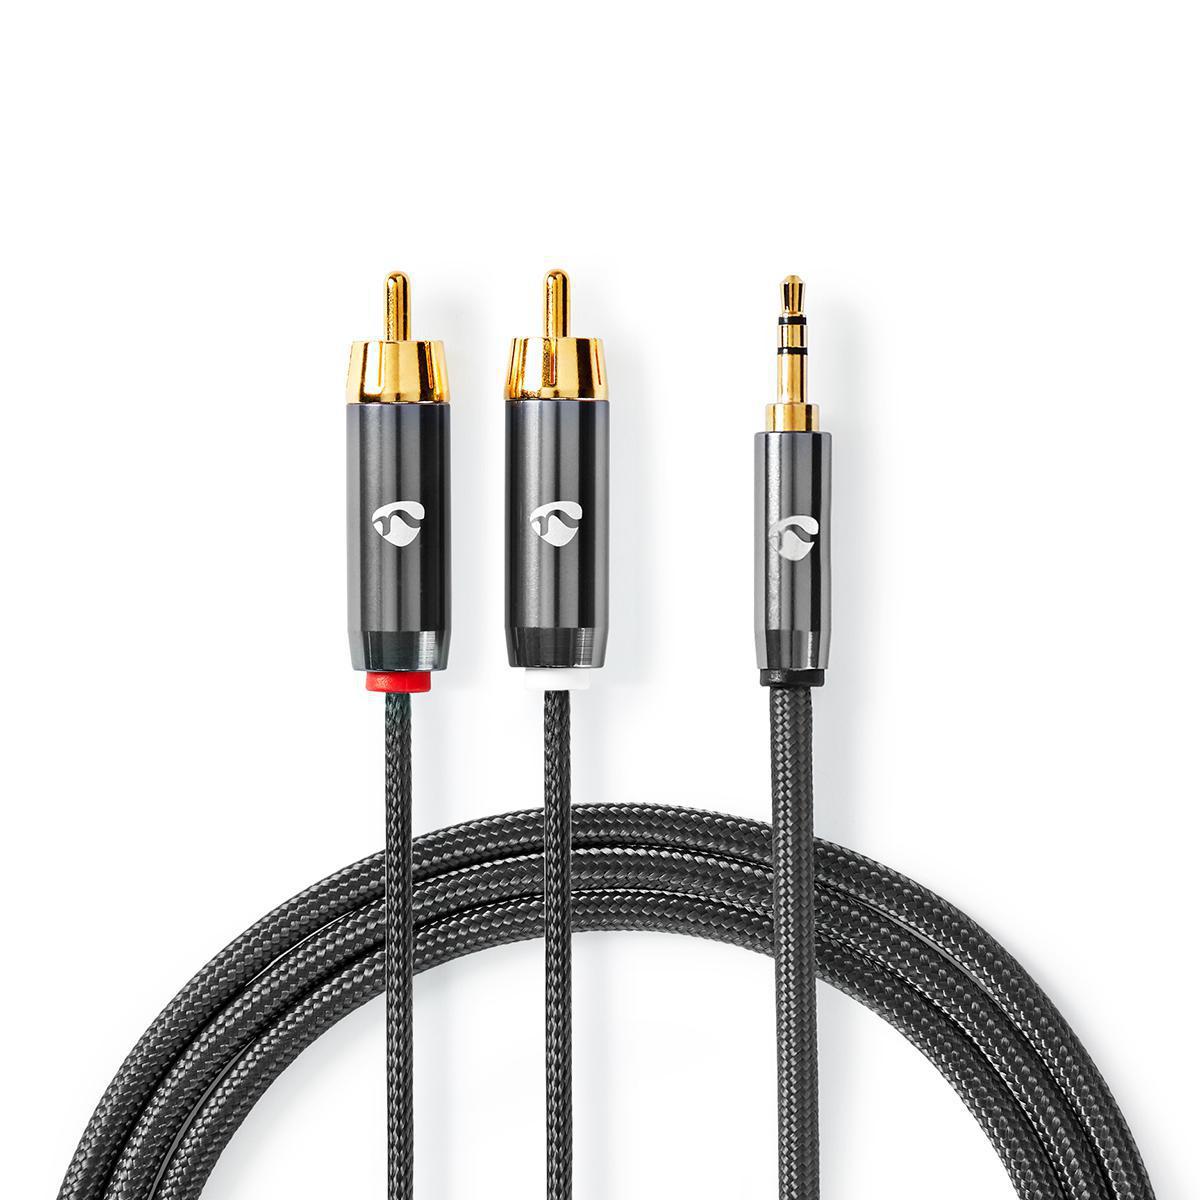 Audio Câble RCA Jack Adaptateur 3.5mm Mâle vers 2 RCA Femelle Stéréo pour  Téléphone Platine vinyle Enceinte Chaine HiFi Amplificateur Autoradio